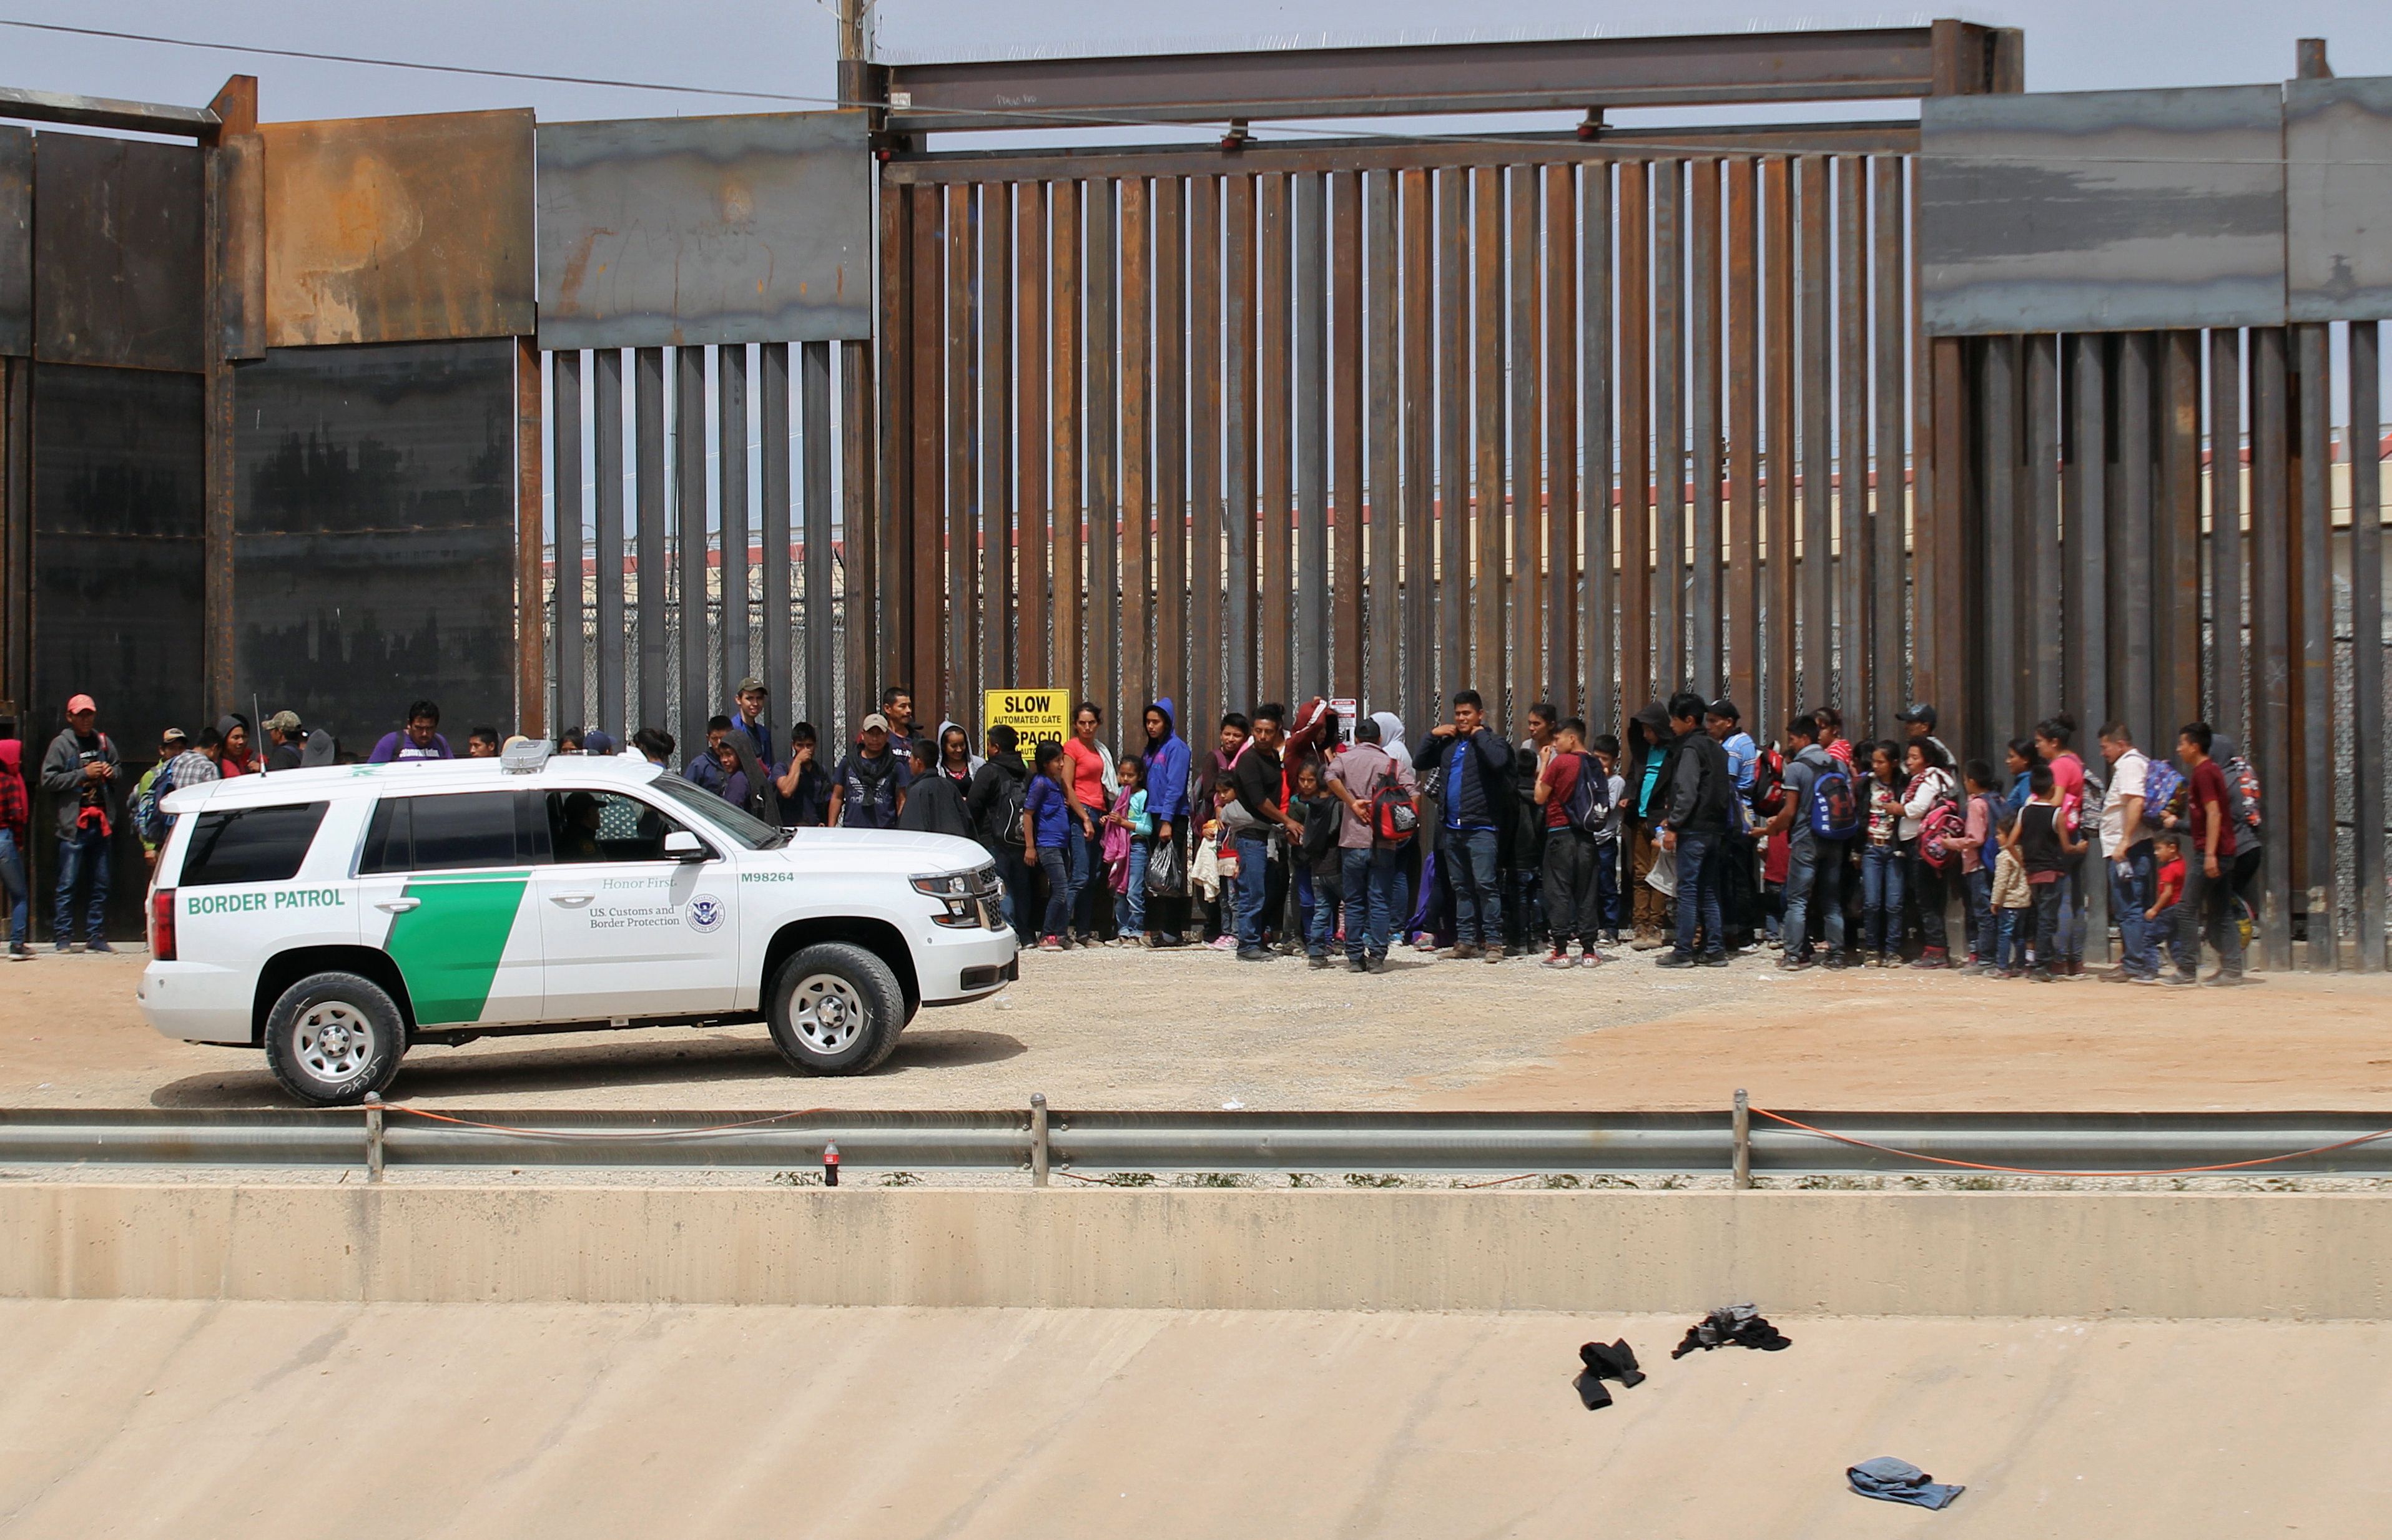 Miles de centroamericanos llegan cada mes a EE. UU.  a pedir asilo. En la imagen, una unidad de la Patrulla Fronteriza custodia a un grupo de indocumentados. (Foto Prensa Libre: AFP)